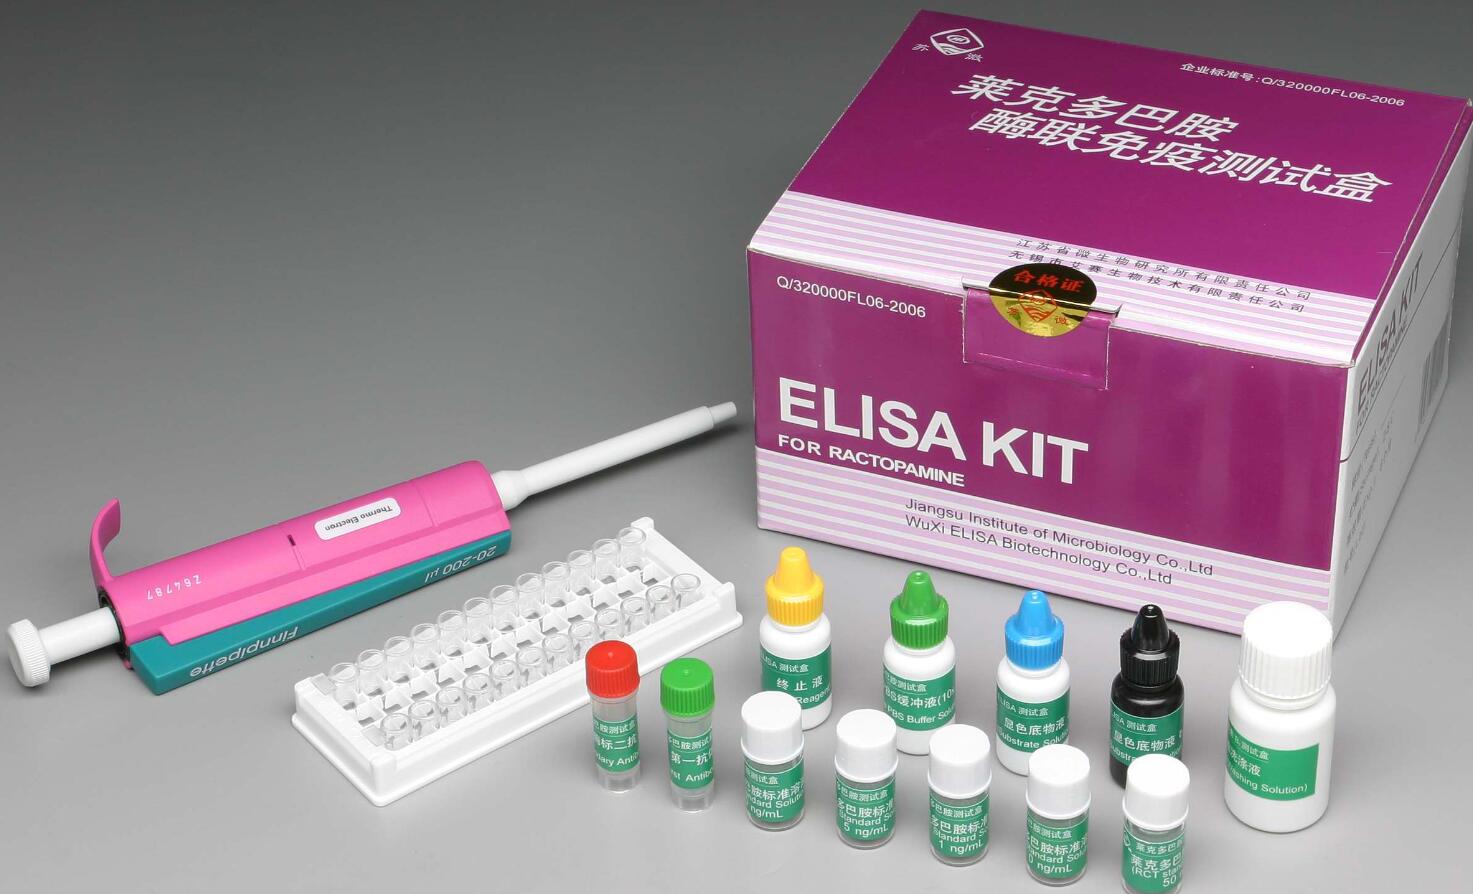 人抗染色体抗体(anti-chromosome Ab)elisa免疫组化试剂盒图片